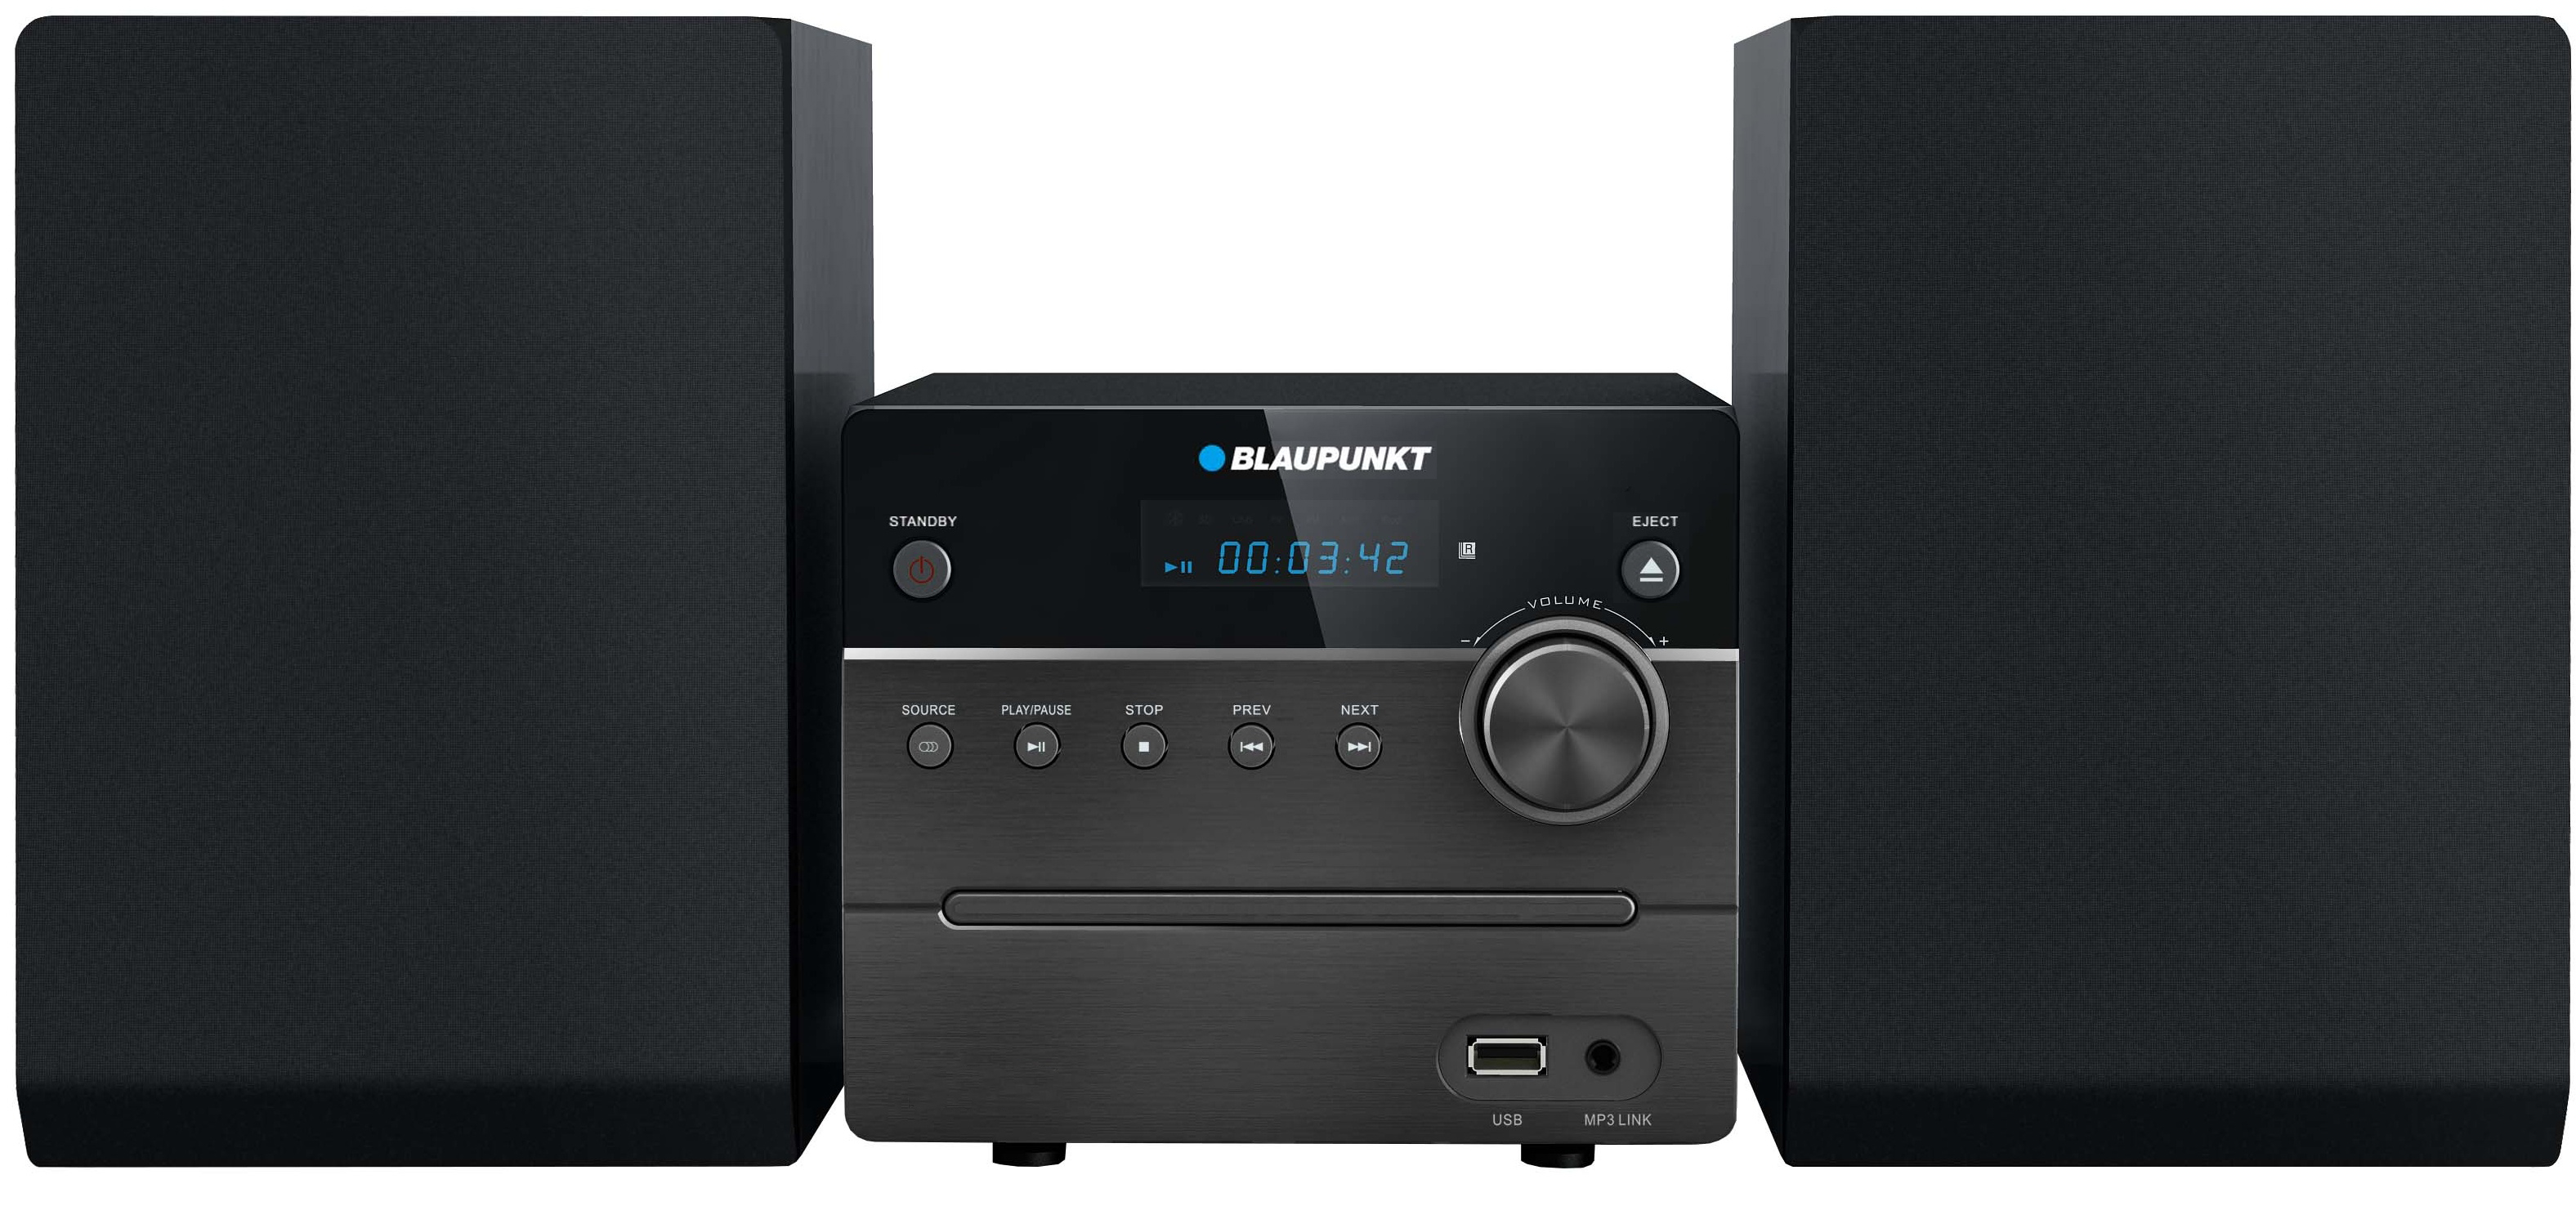 Microsistem audio blaupunkt, putere 2x5w, cd player, fm pll radio, usb